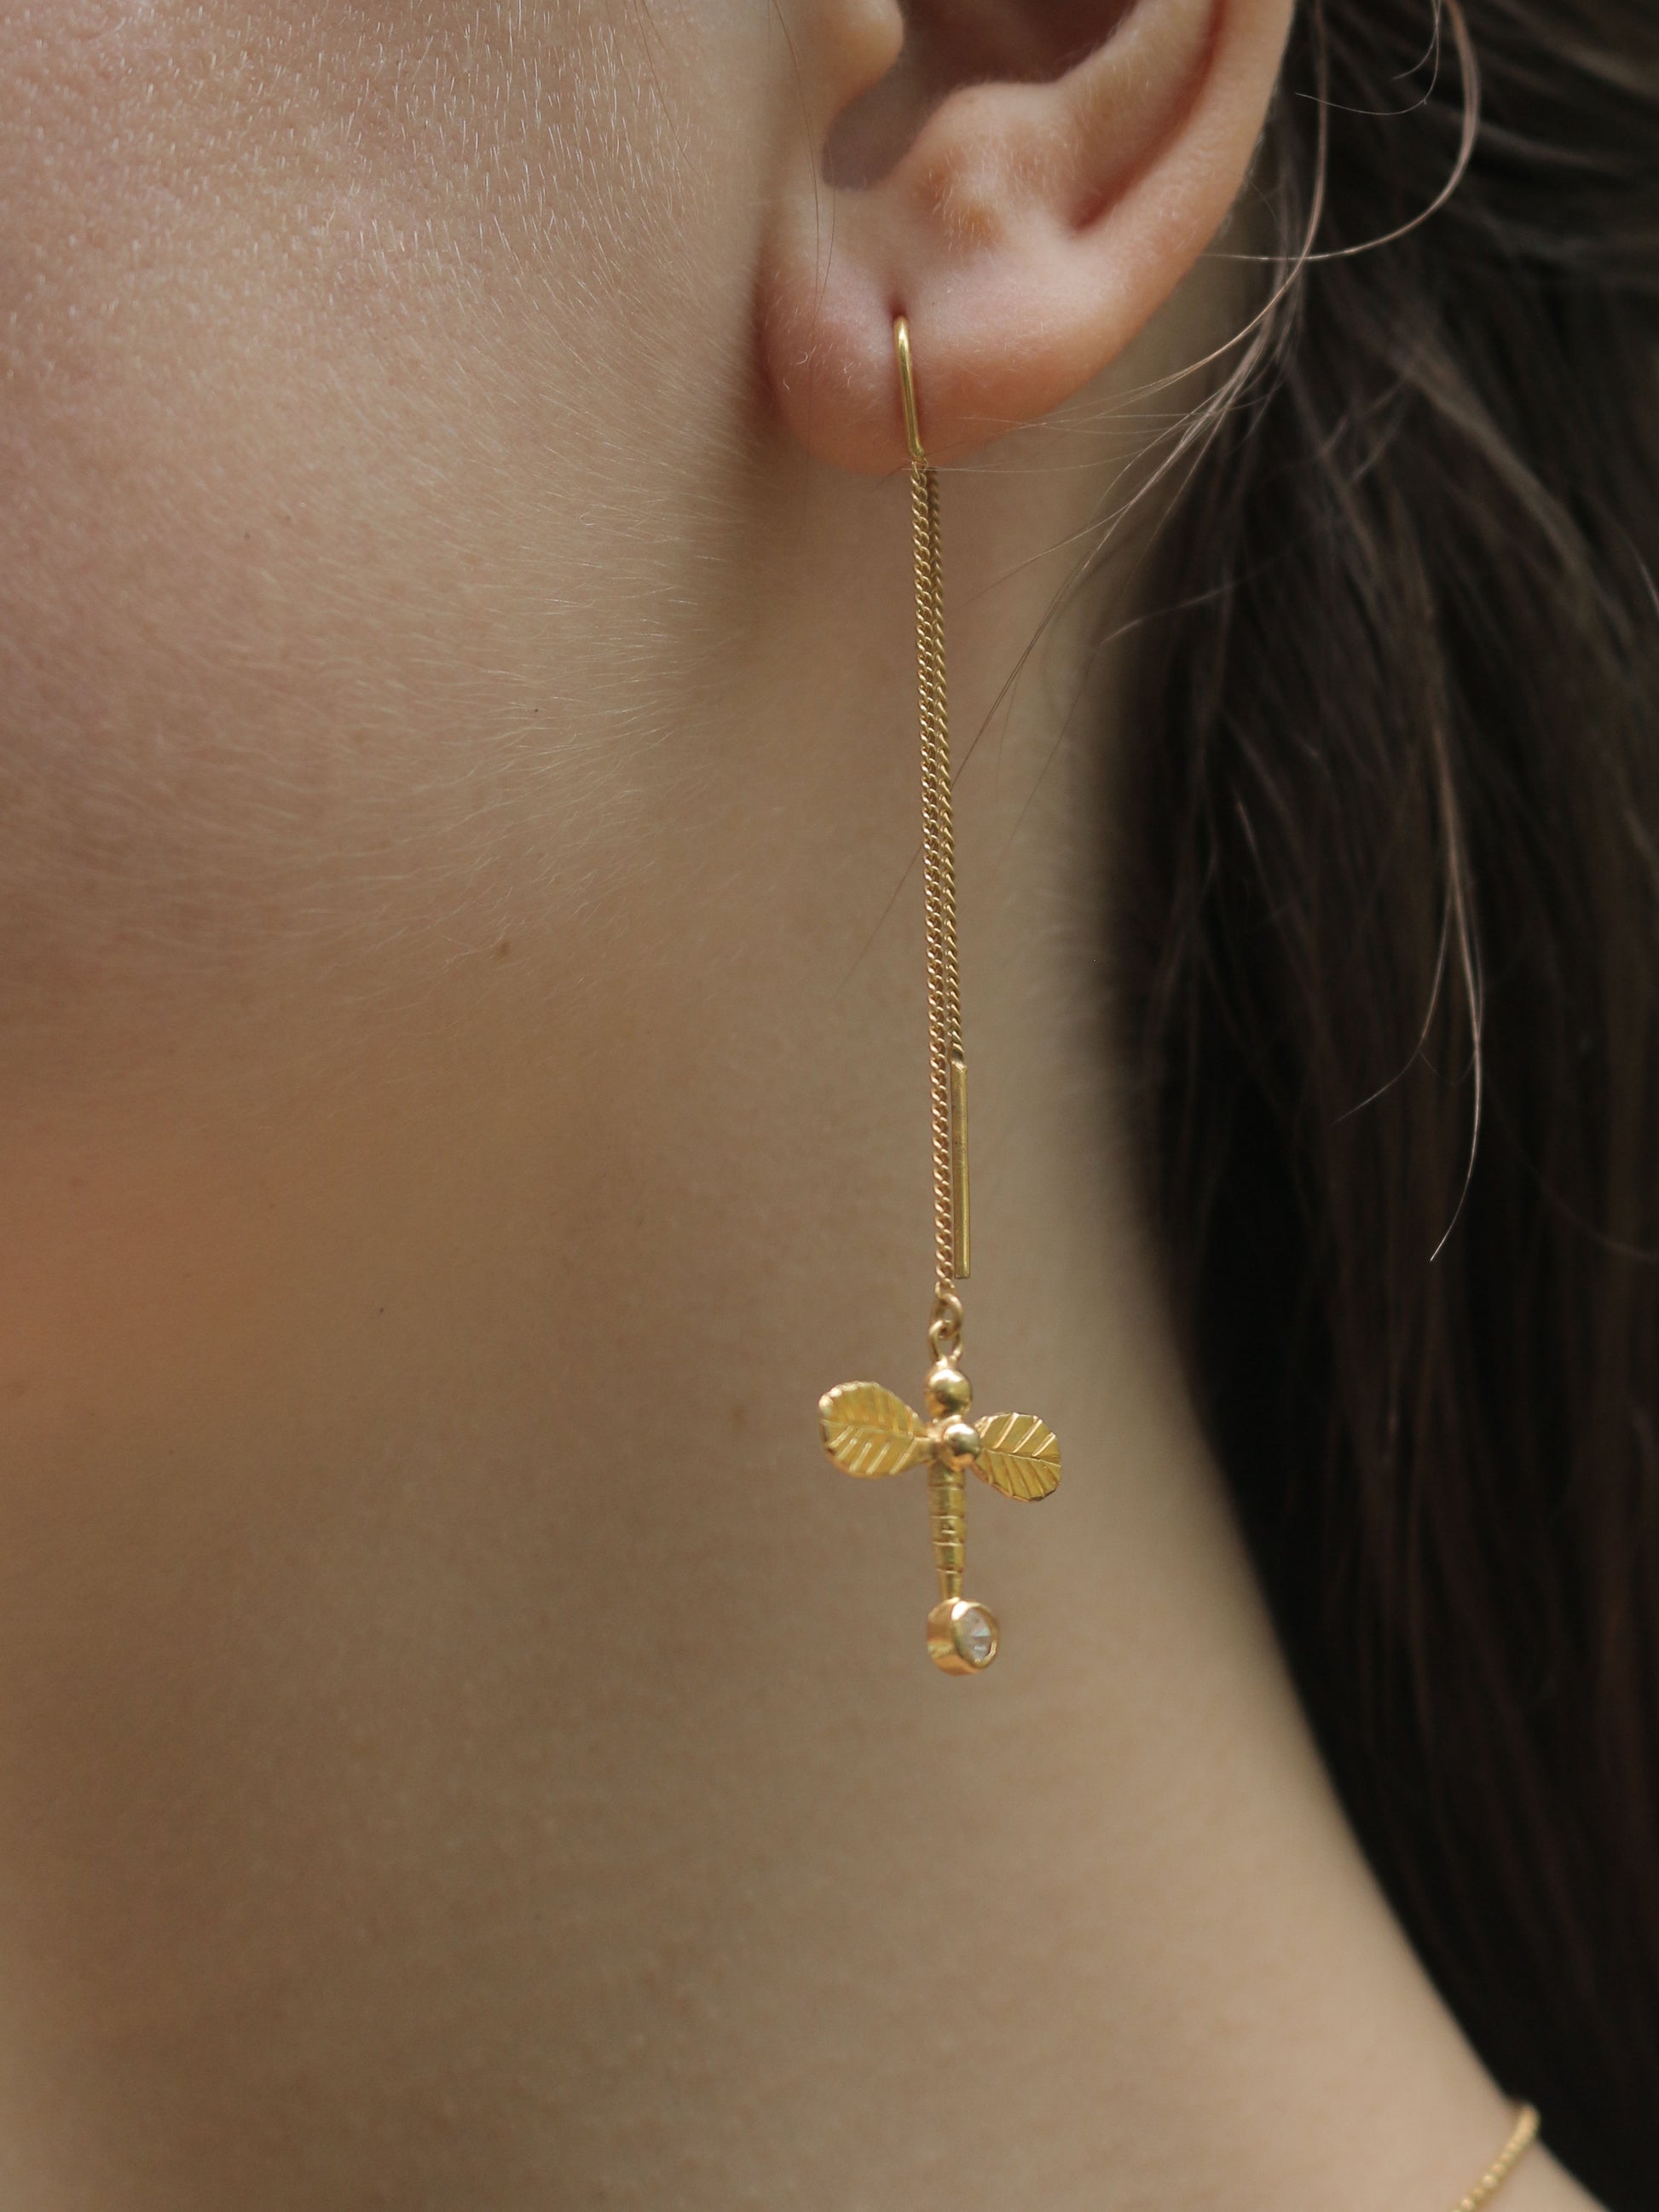 Dragonfly earrings on model